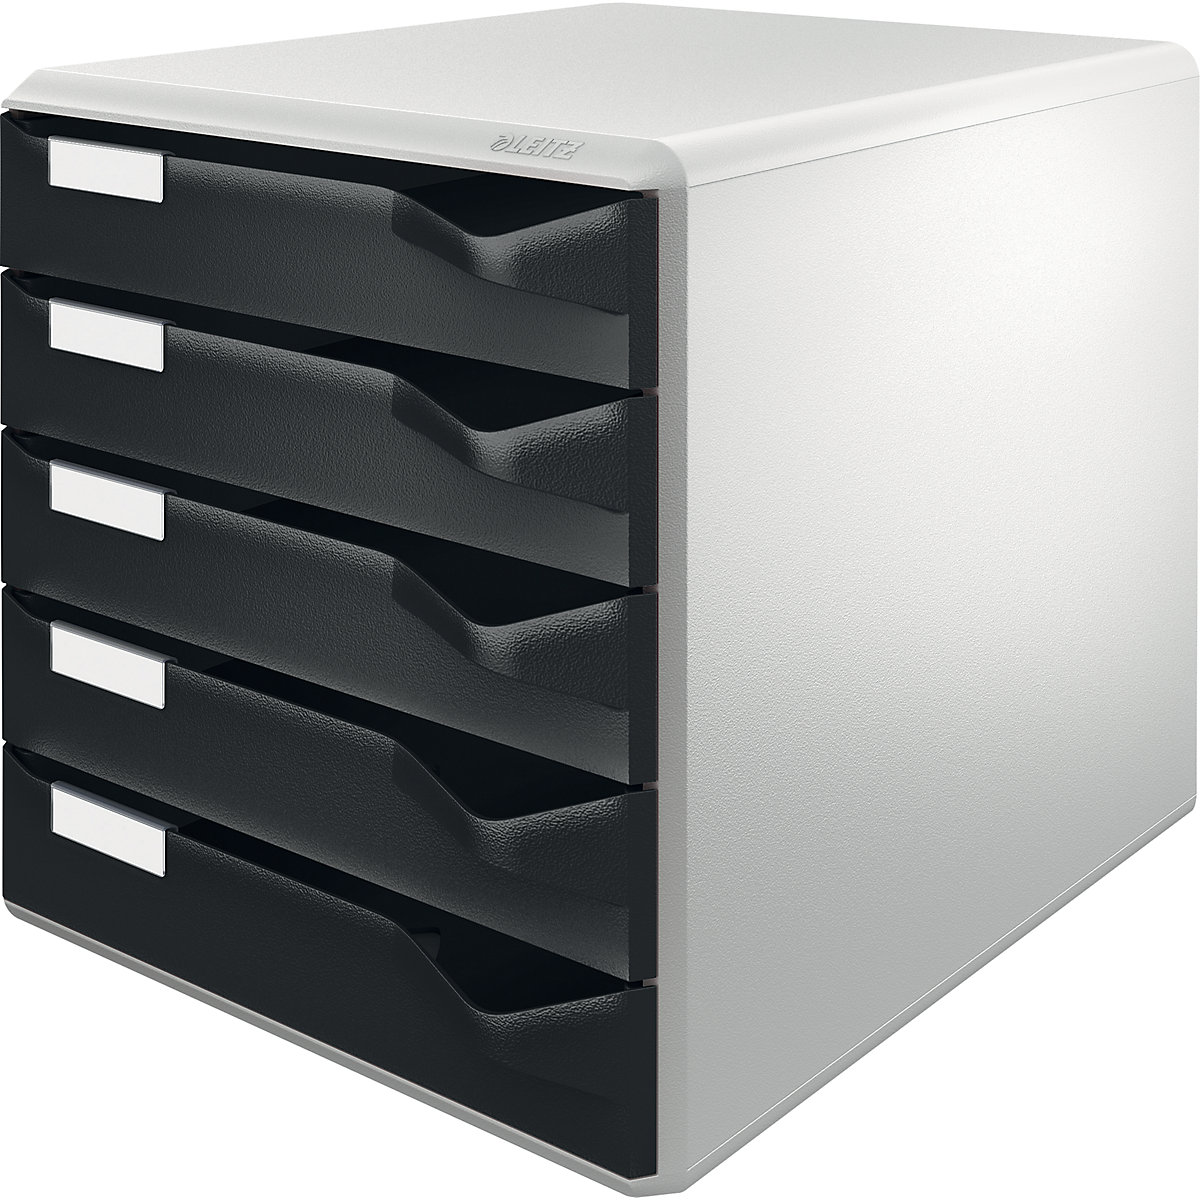 Kutija za odlaganje – Leitz, komplet za poštu i obrasce, kućište u sivoj boji, ladice u crnoj boji, 5 ladica-8